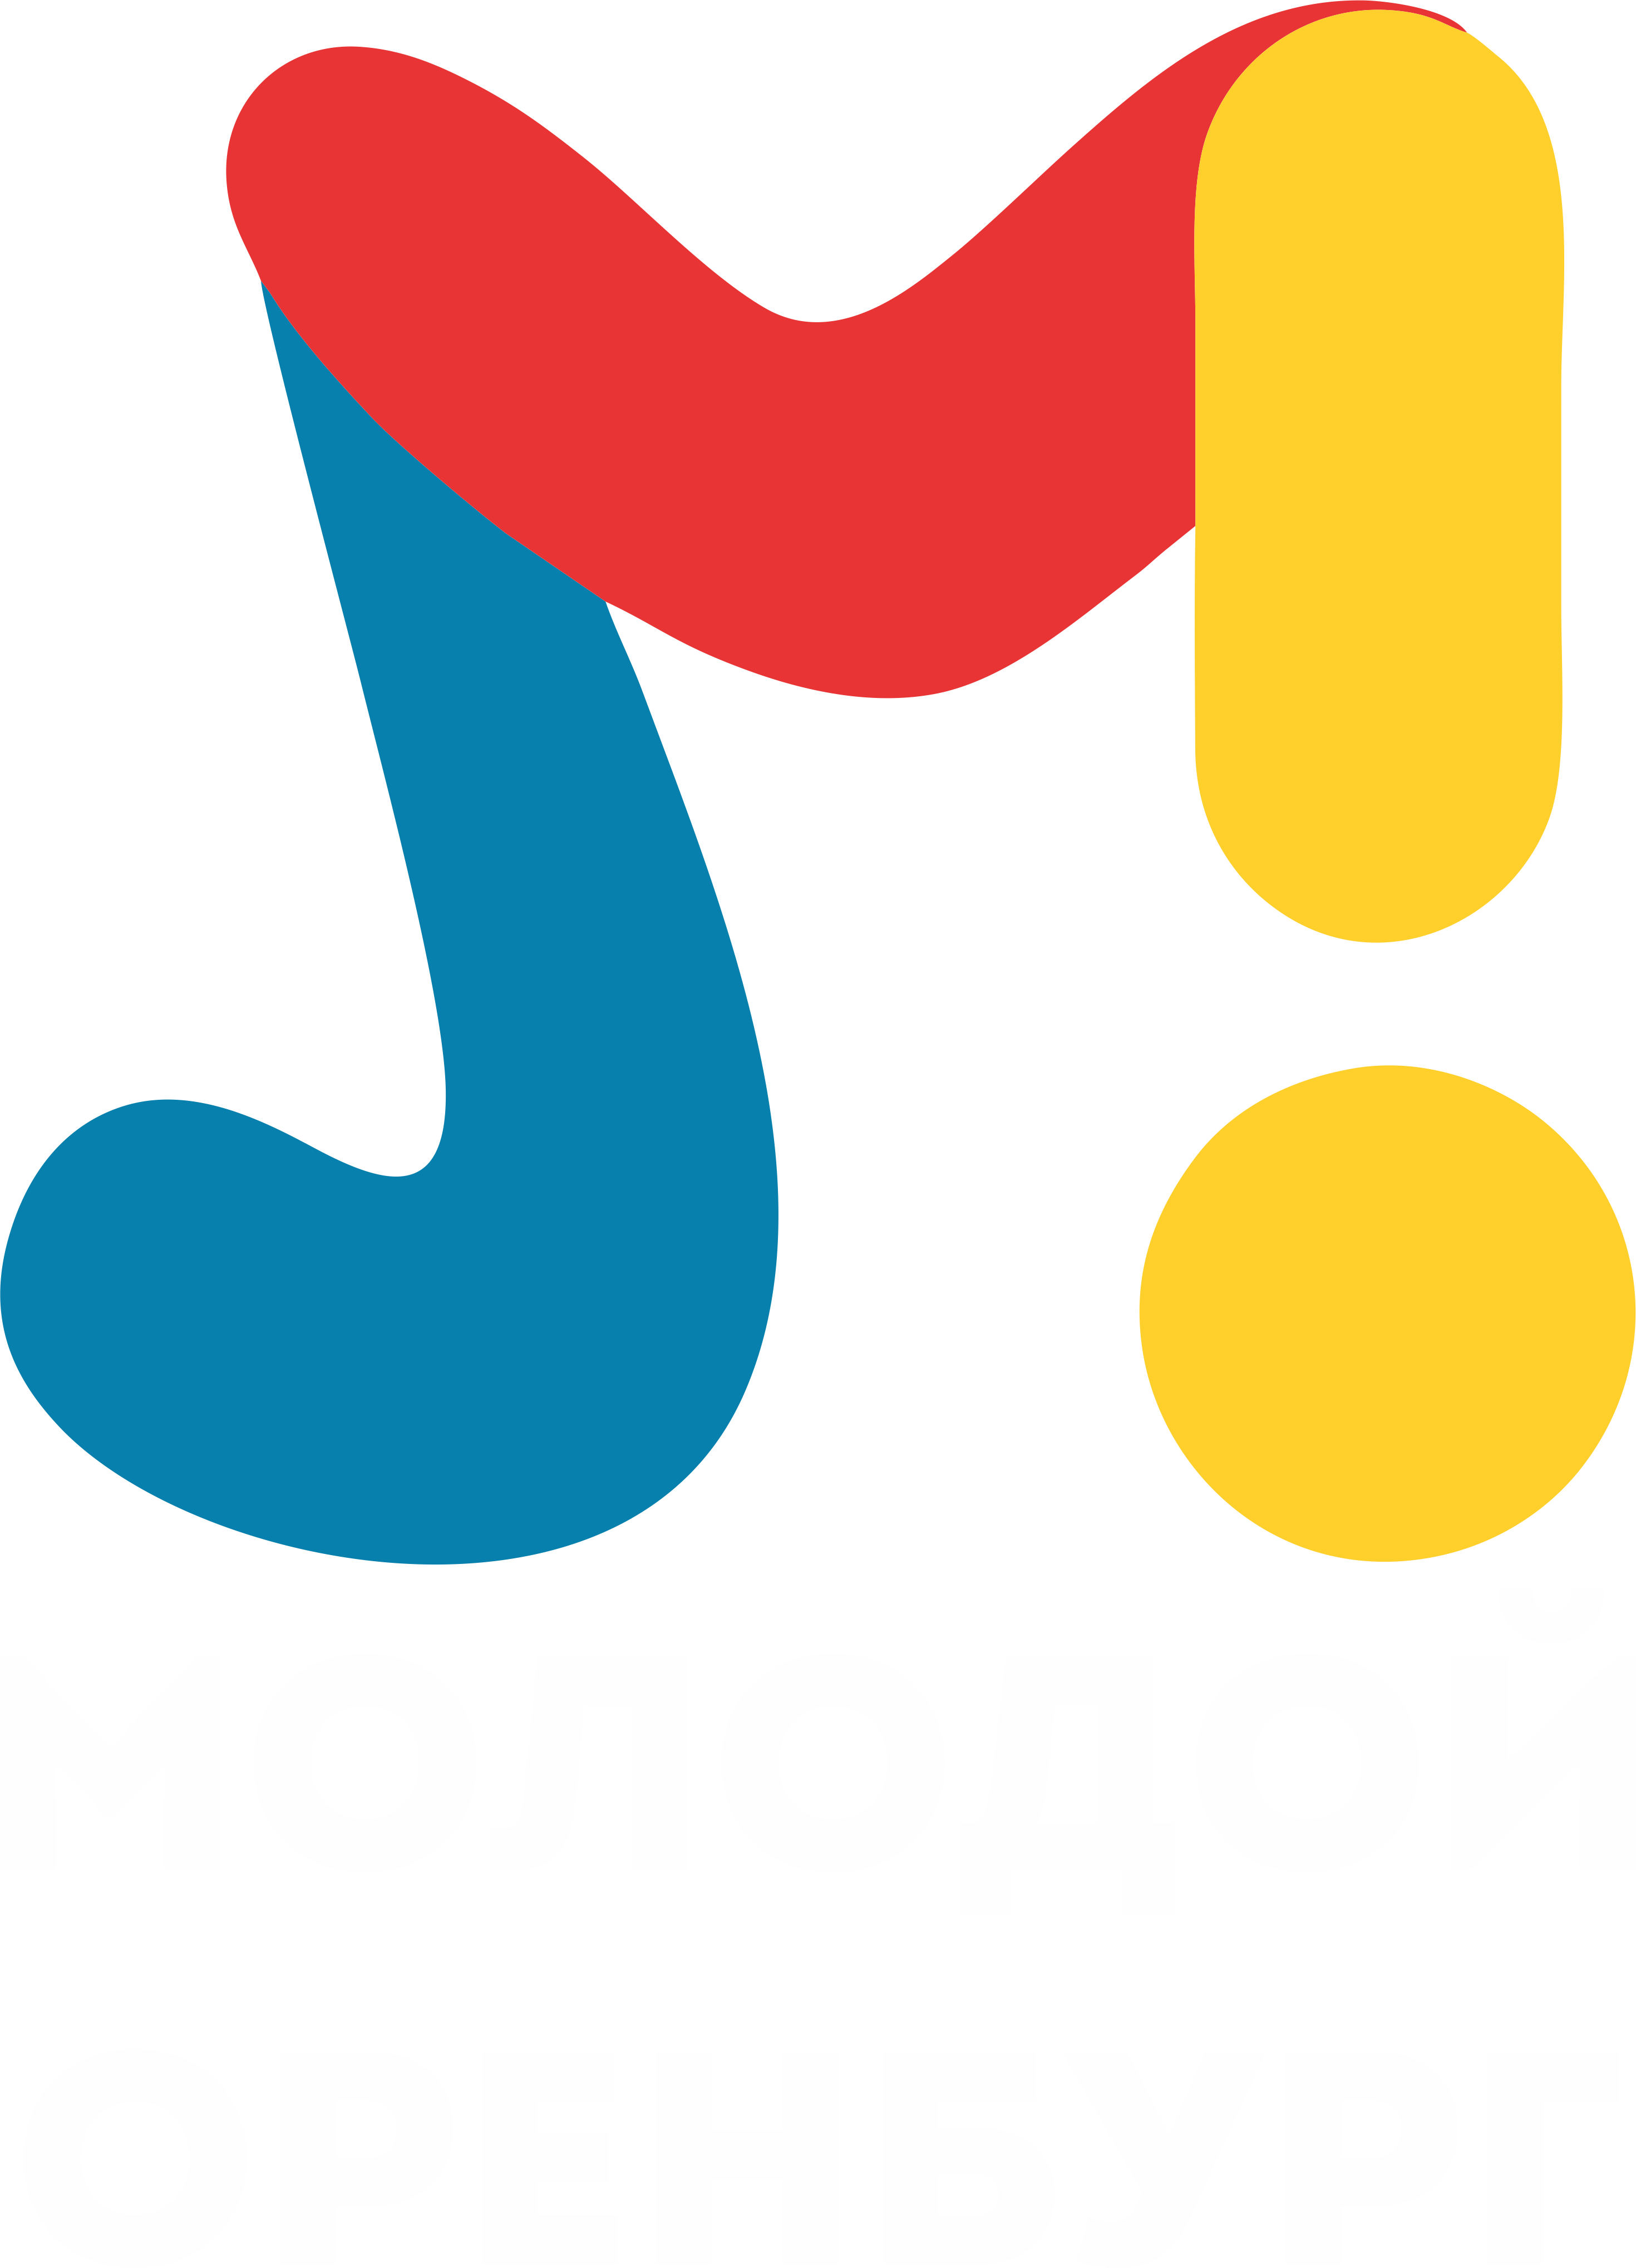 Логотип Муниципальное автономное учреждение "Молодежный центр города Оренбурга"